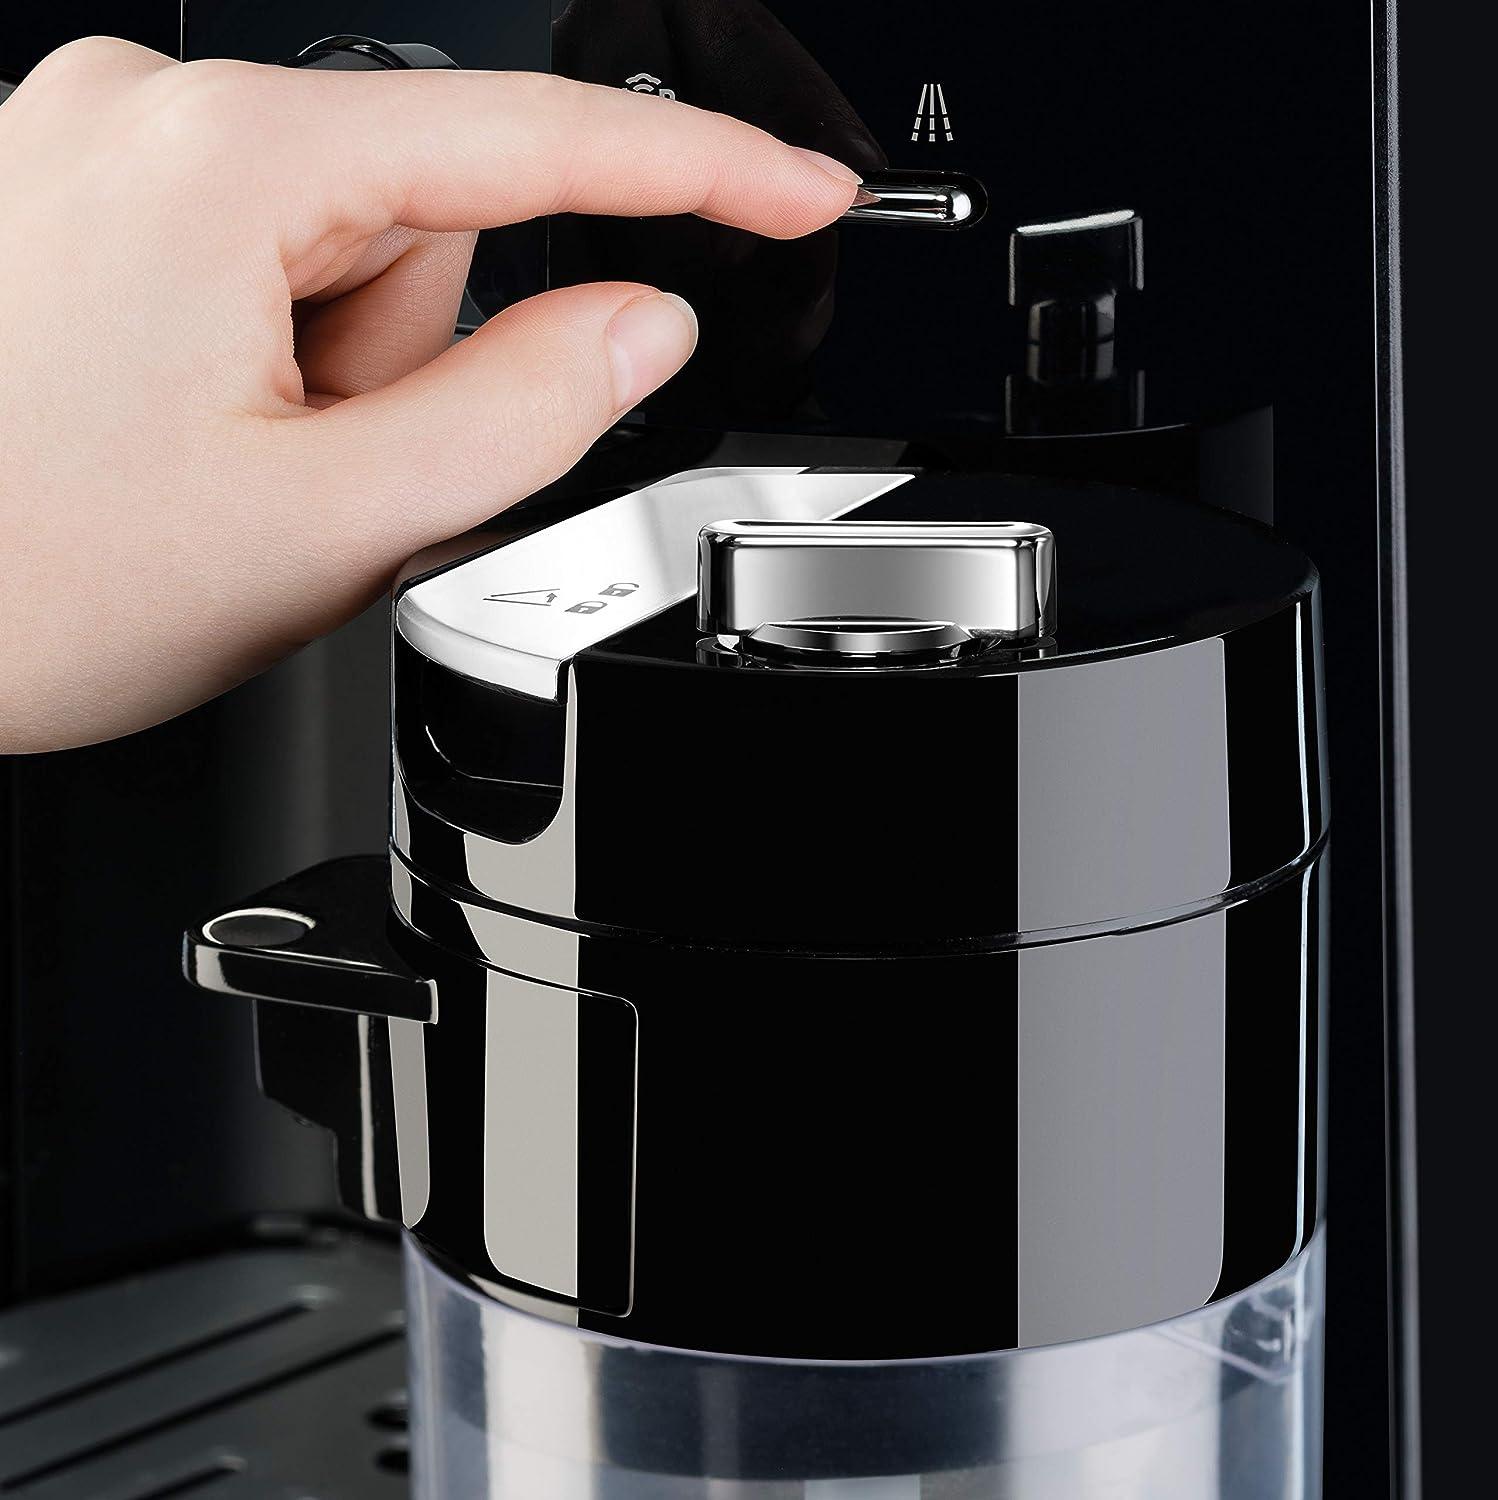 Krups Espresseria Fully Automatic Bean to Cup Coffee & Espresso Machine,EA829827 - Buongiorno Caffe' & More